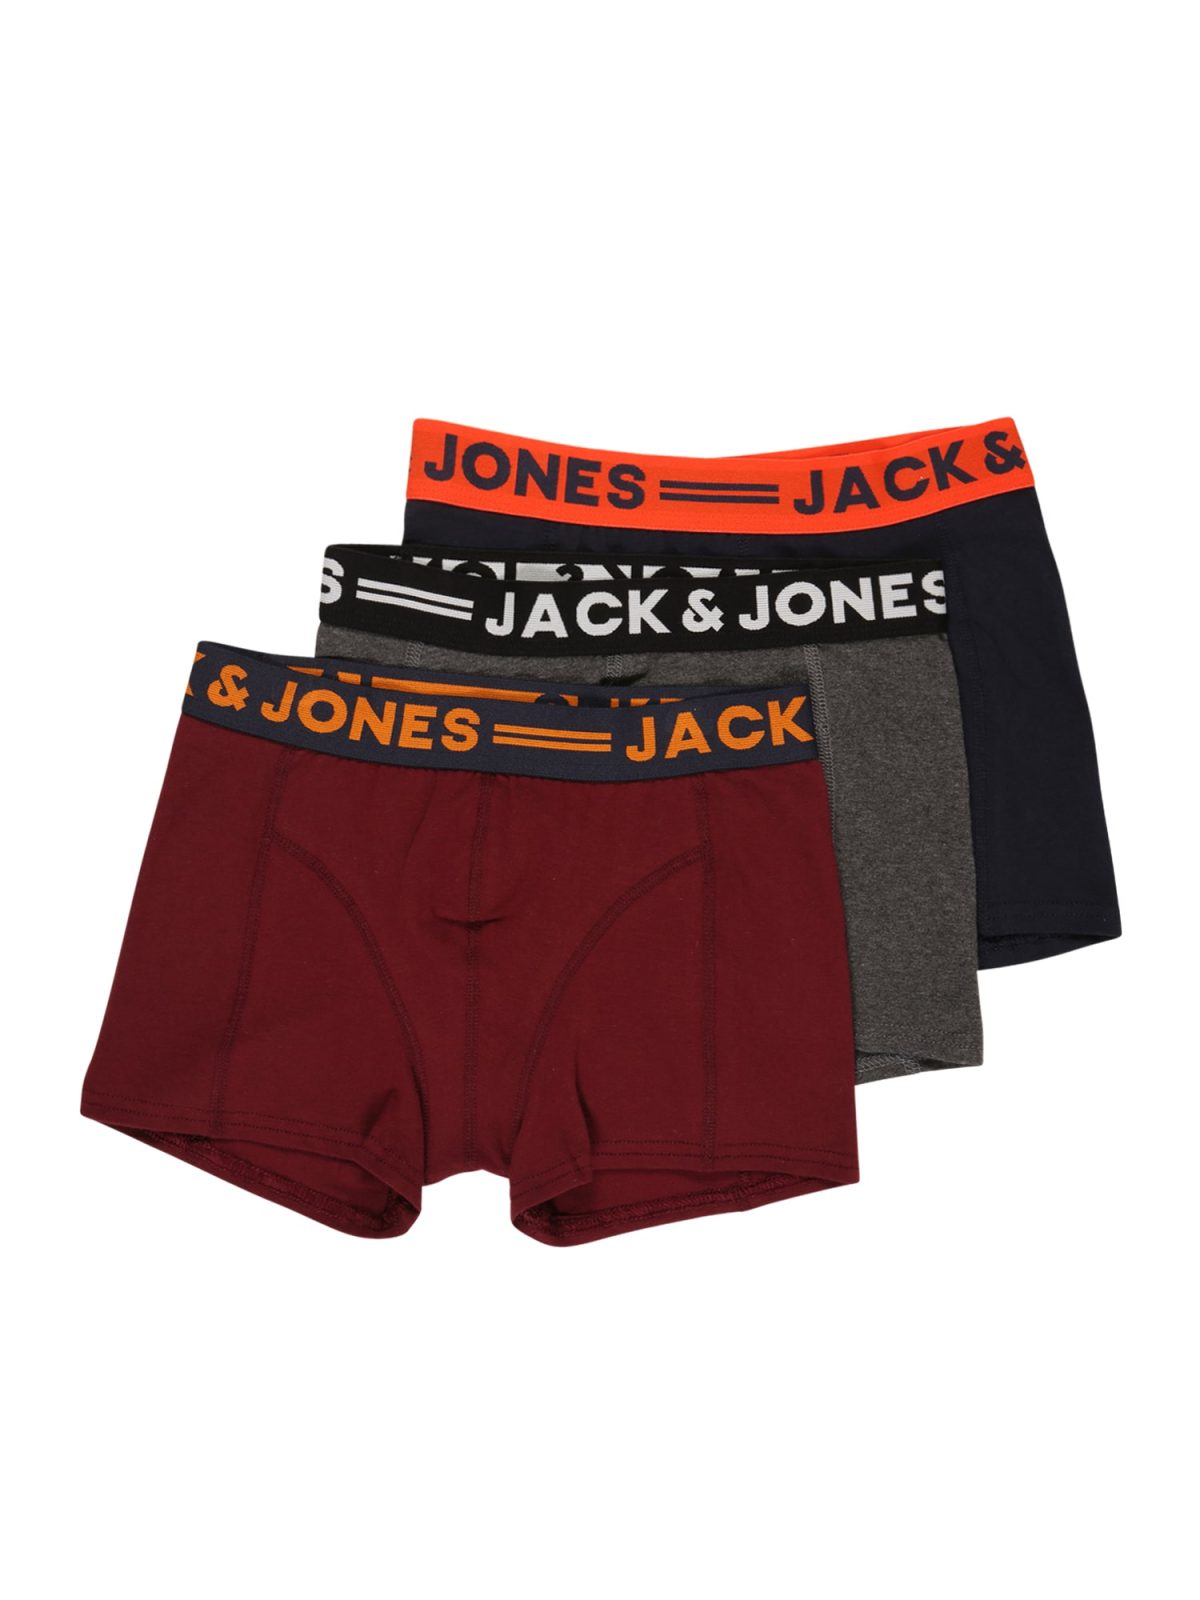 JACK & JONES Spodnjice  mornarska / pegasto siva / oranžna / temno rdeča / črna / bela